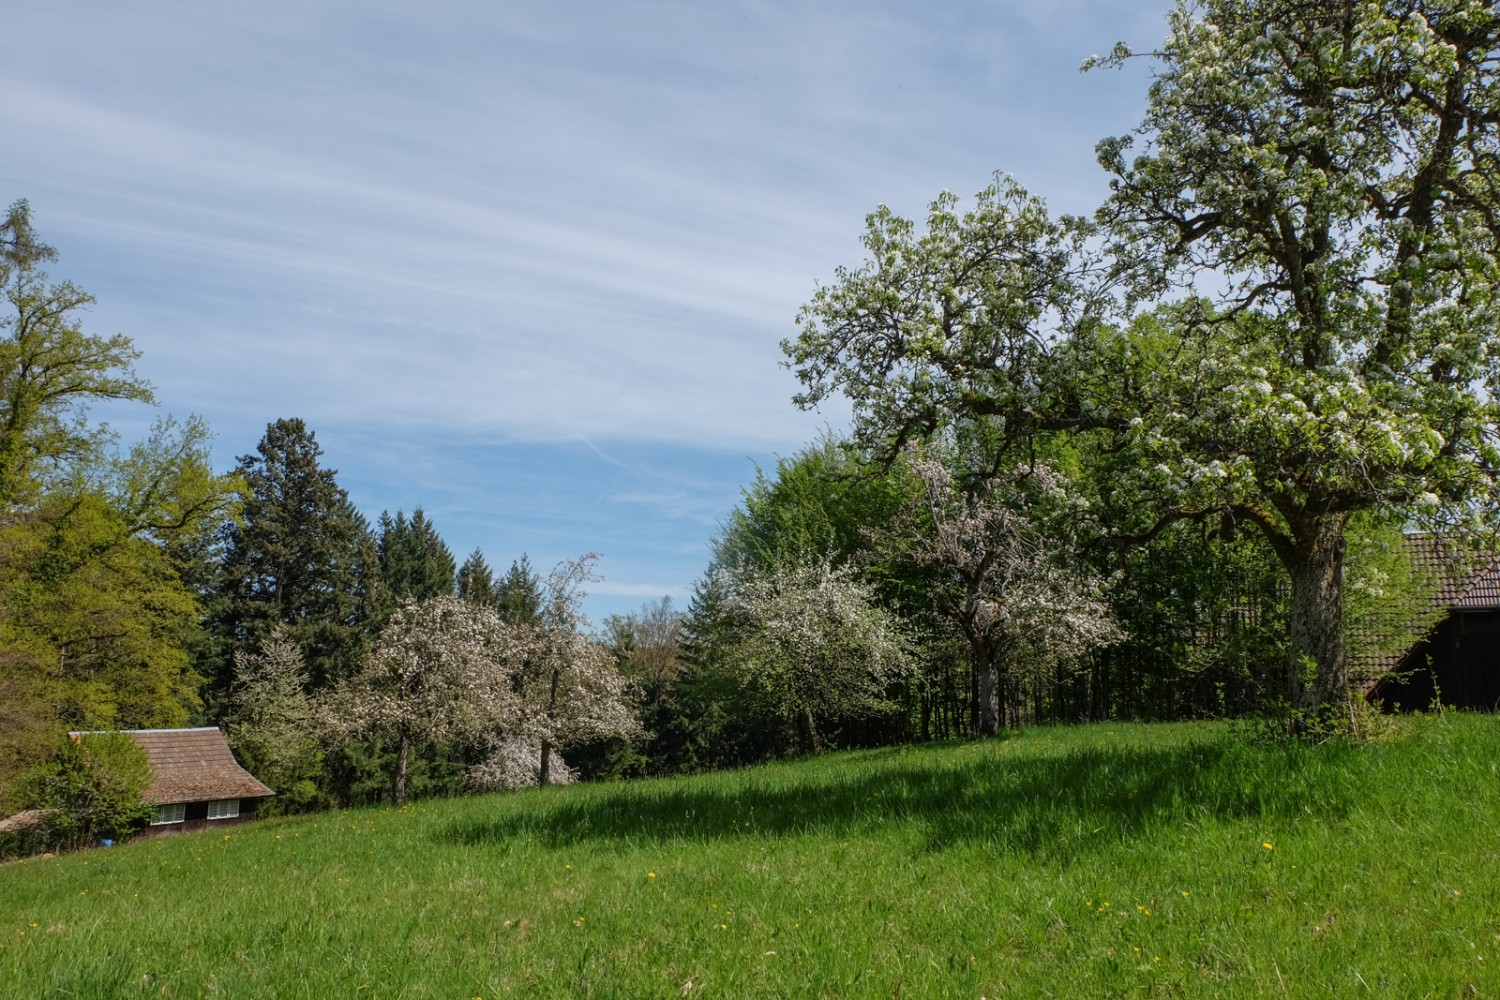 La randonnée mène à travers des prairies où les arbres fleurissent au printemps. Photo: Elsbeth Flüeler